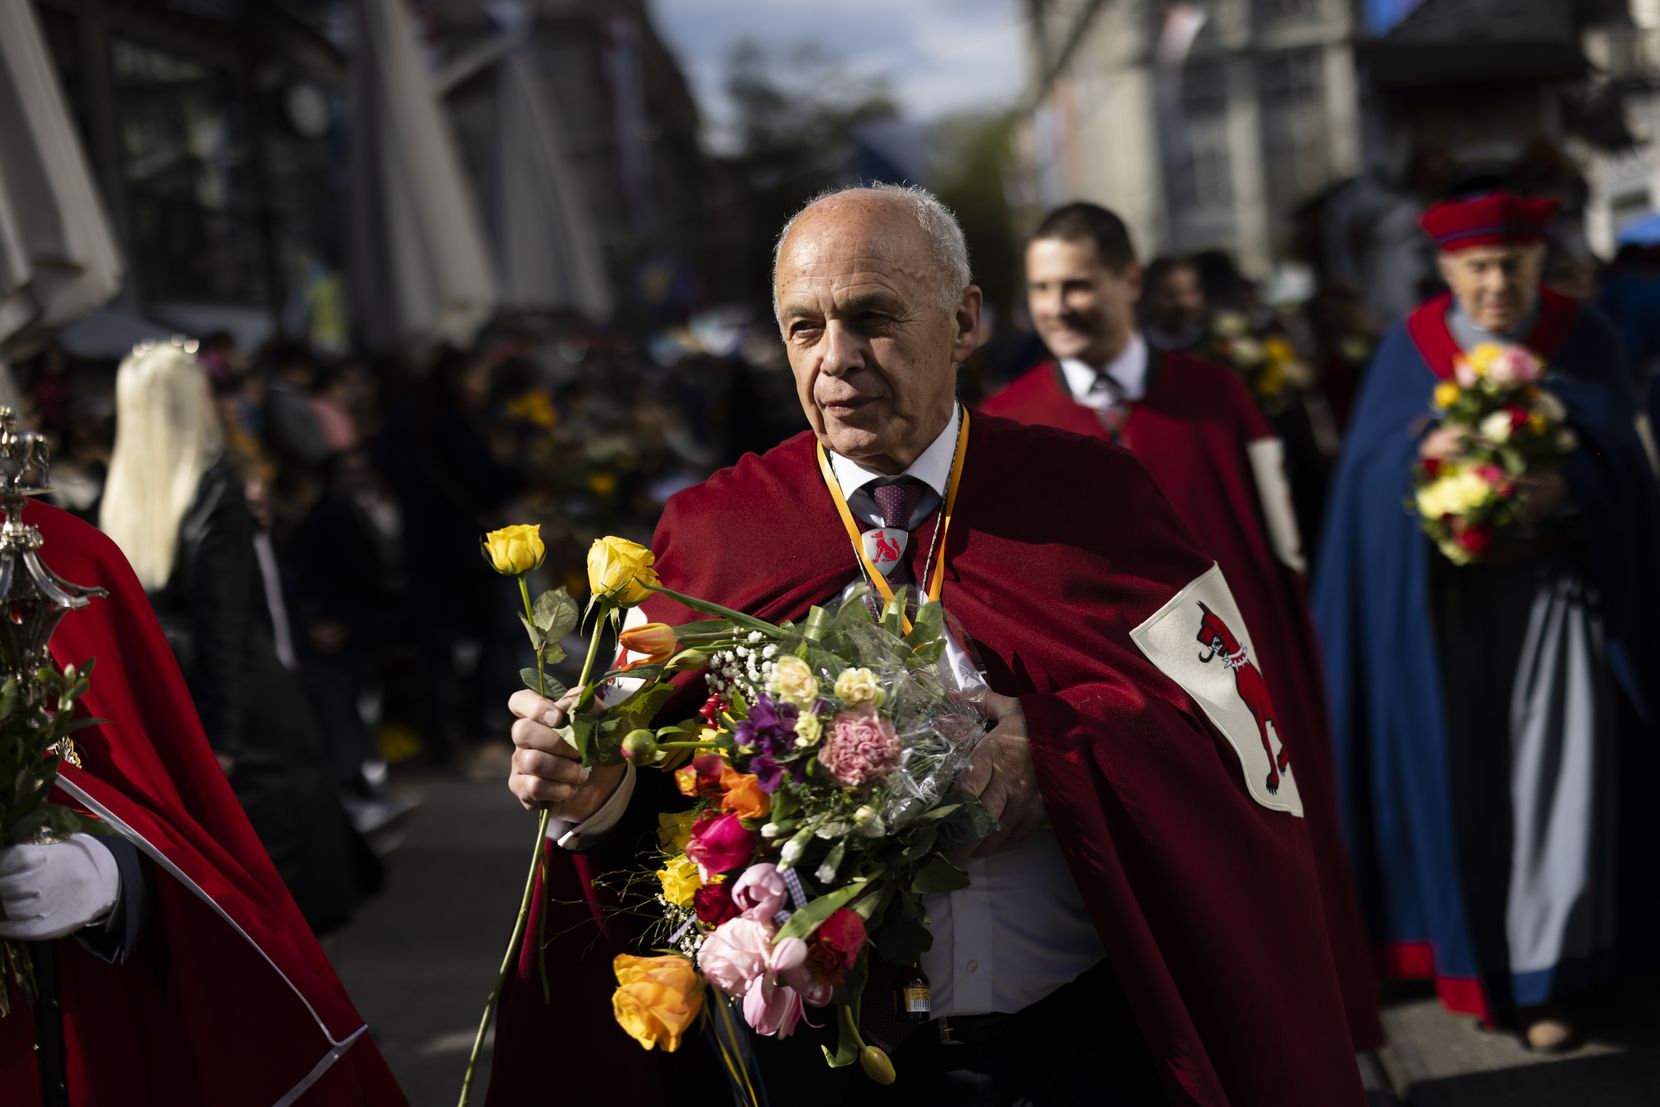 Ein alter Mann mit weissen Haaren und einem roten Umhang mit Wappen hält einen Blumenstrauss in der Hand.